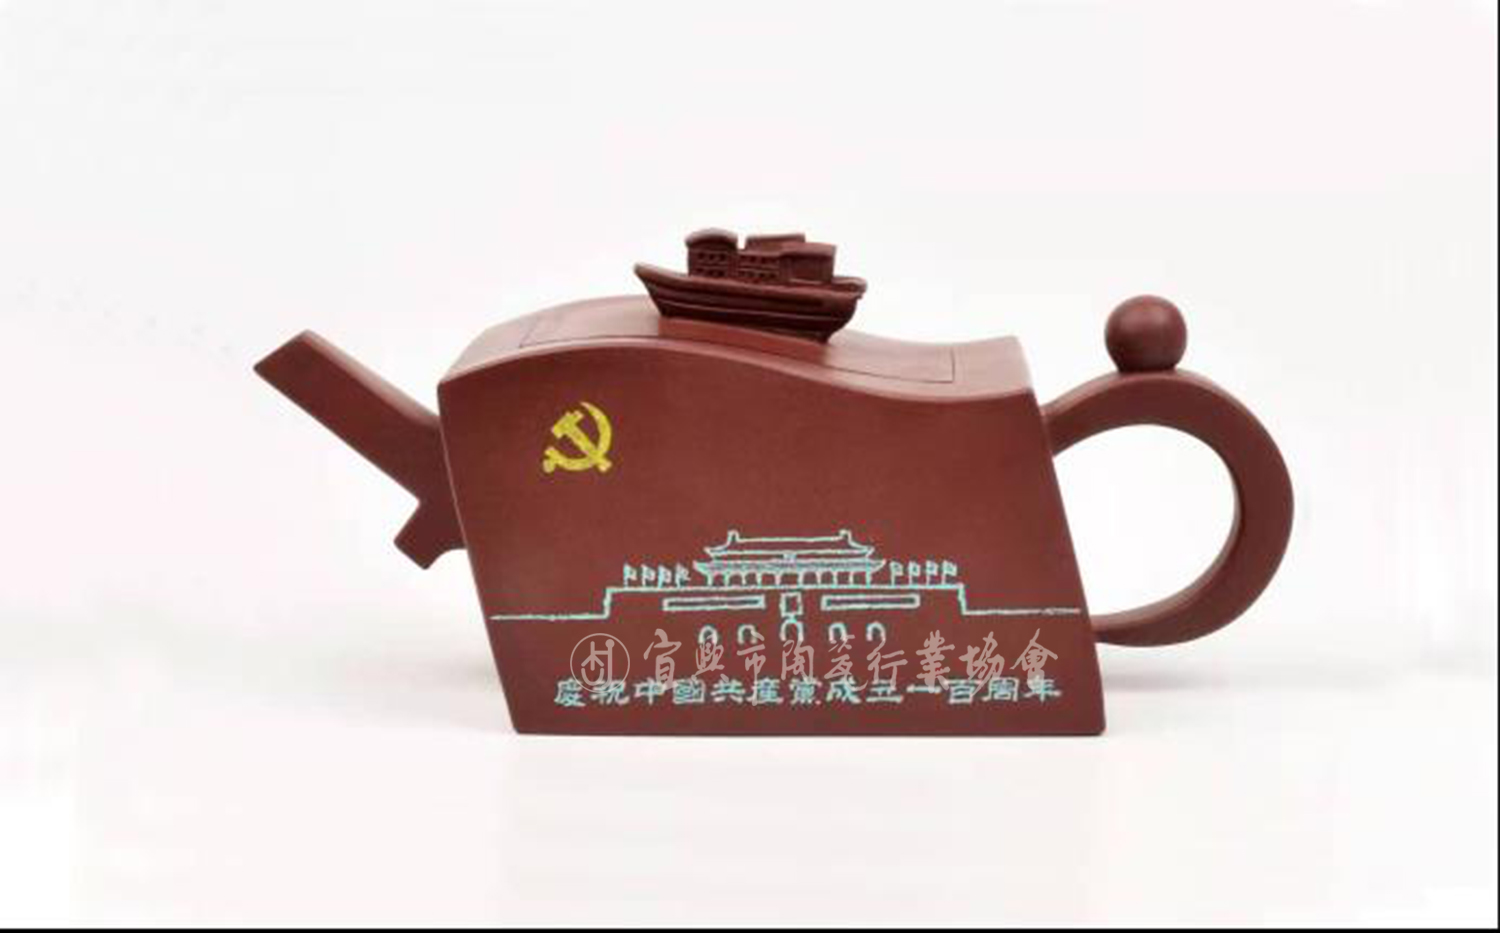 2021年中国共产党成立100周年创作的《百年征程壶》.jpg